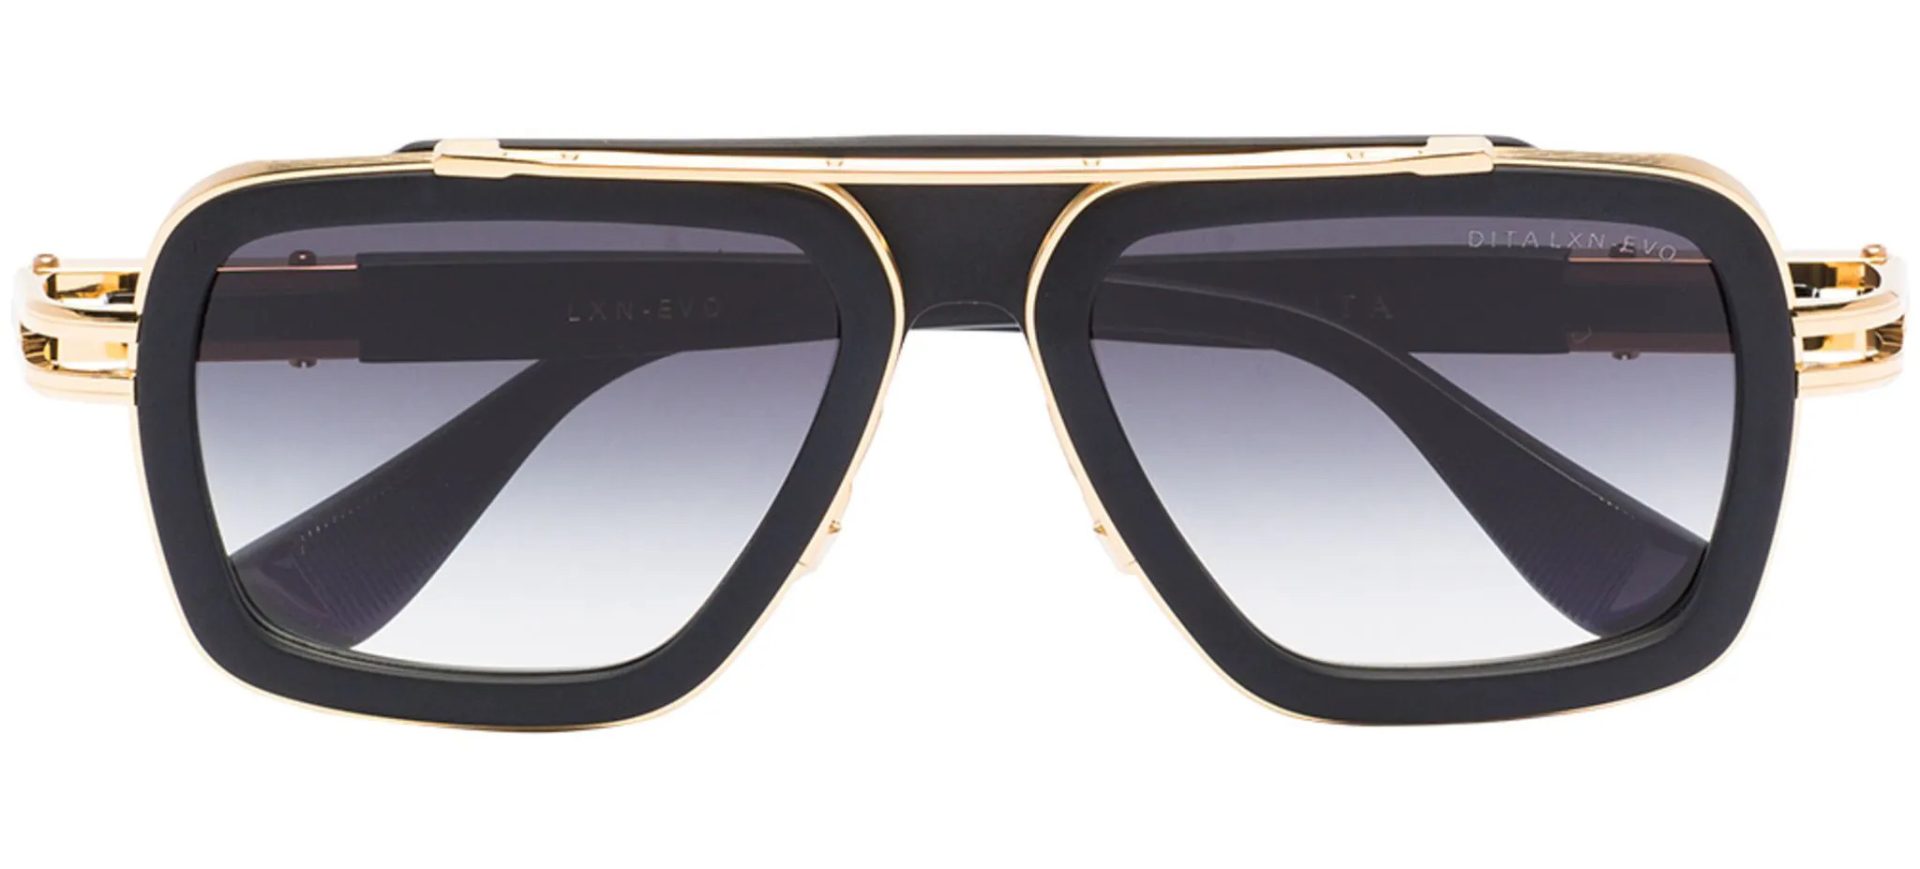 Gucci, Saint Laurent или Balenciaga? Выбираем солнцезащитные очки